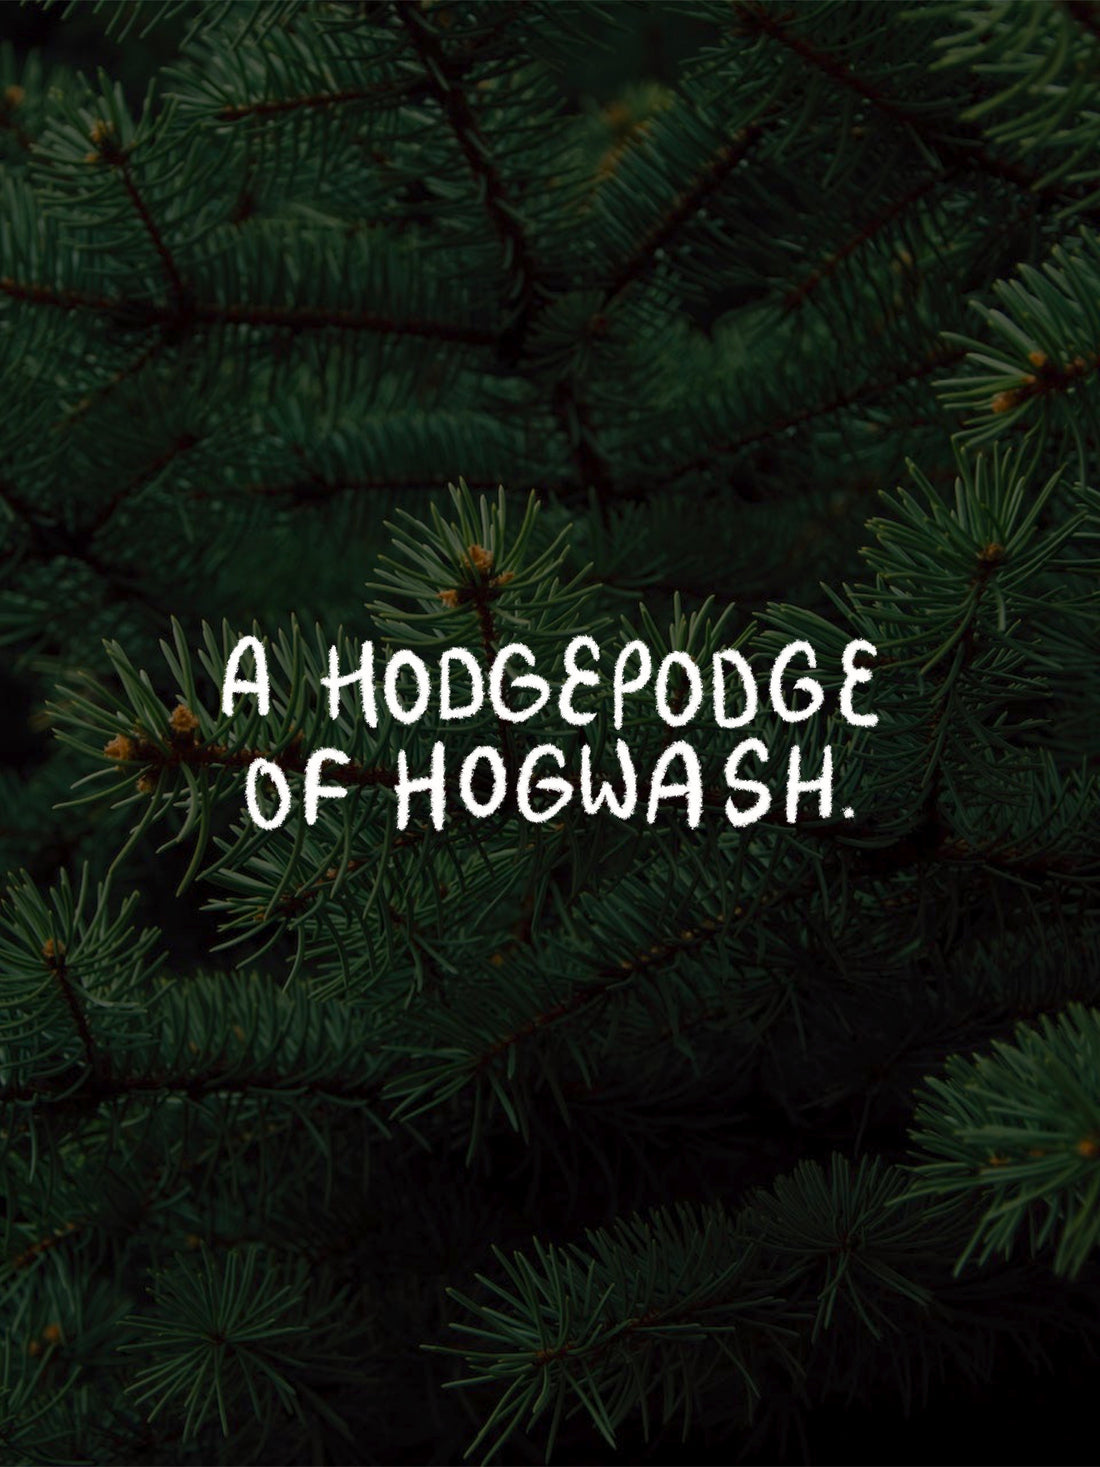 A Hodgepodge of Hogwash